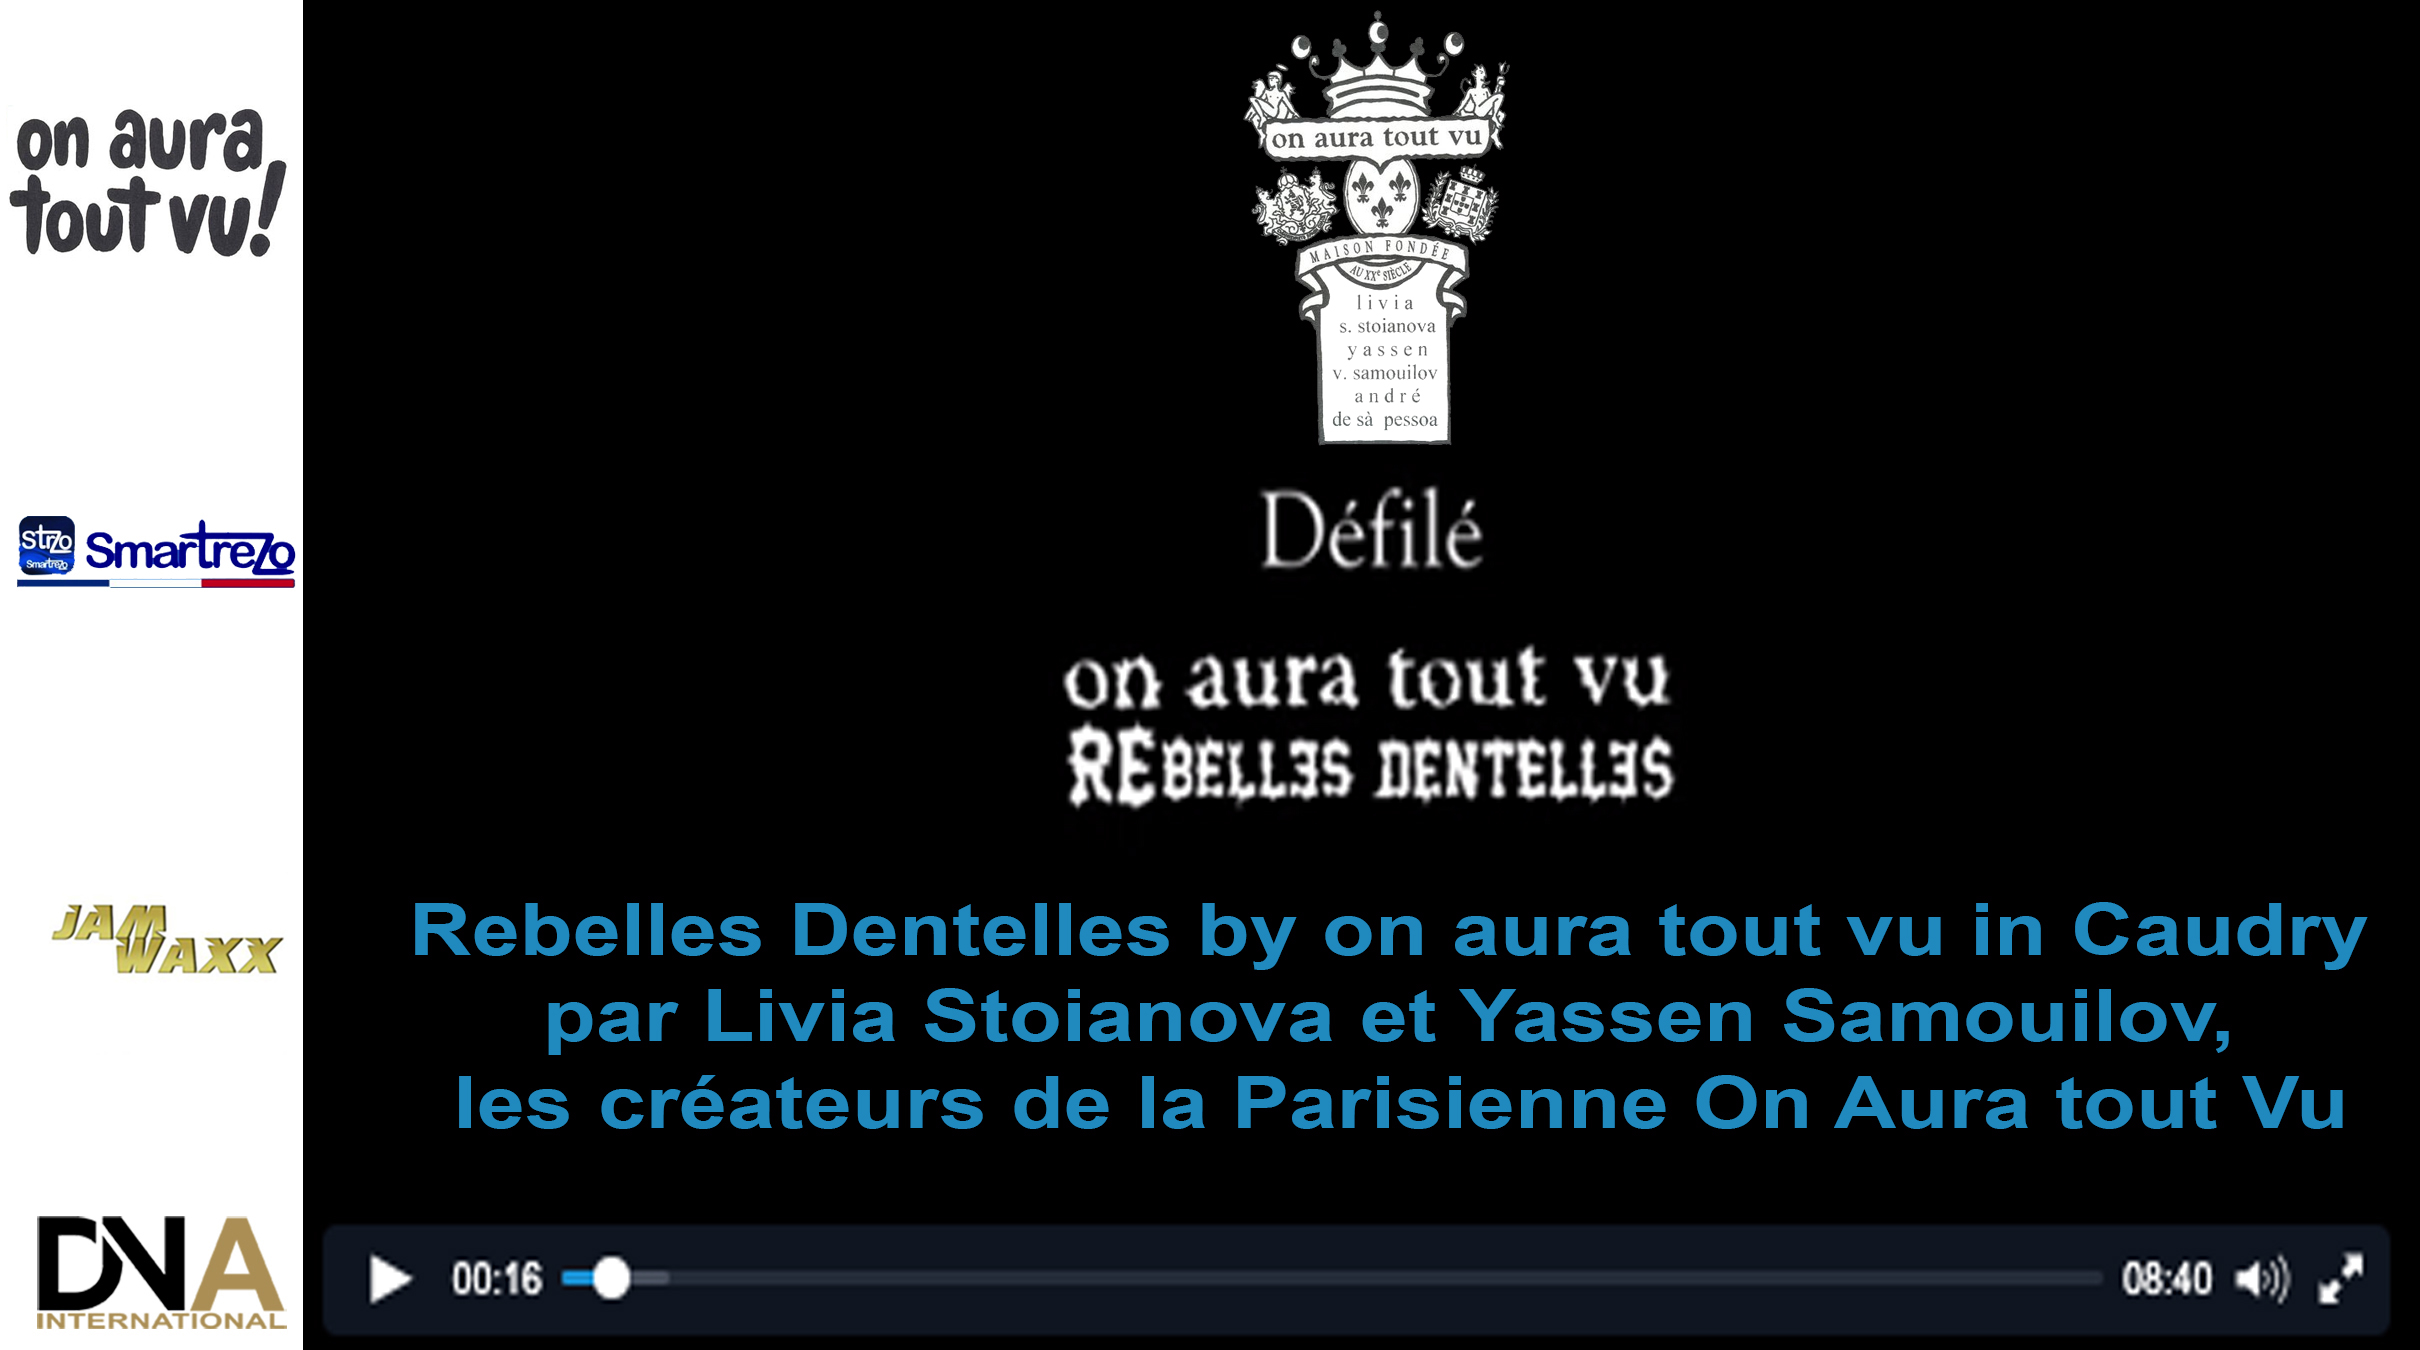 Rebelles-Dentelles-by-on-aura-tout-vu-in-Caudry--par-Livia-Stoianova-et-Yassen-Samouilov,--les-créateurs-de-la-Parisienne-On-Aura-tout-Vu----DNAFRICA-DNA-INTERNATIONAL